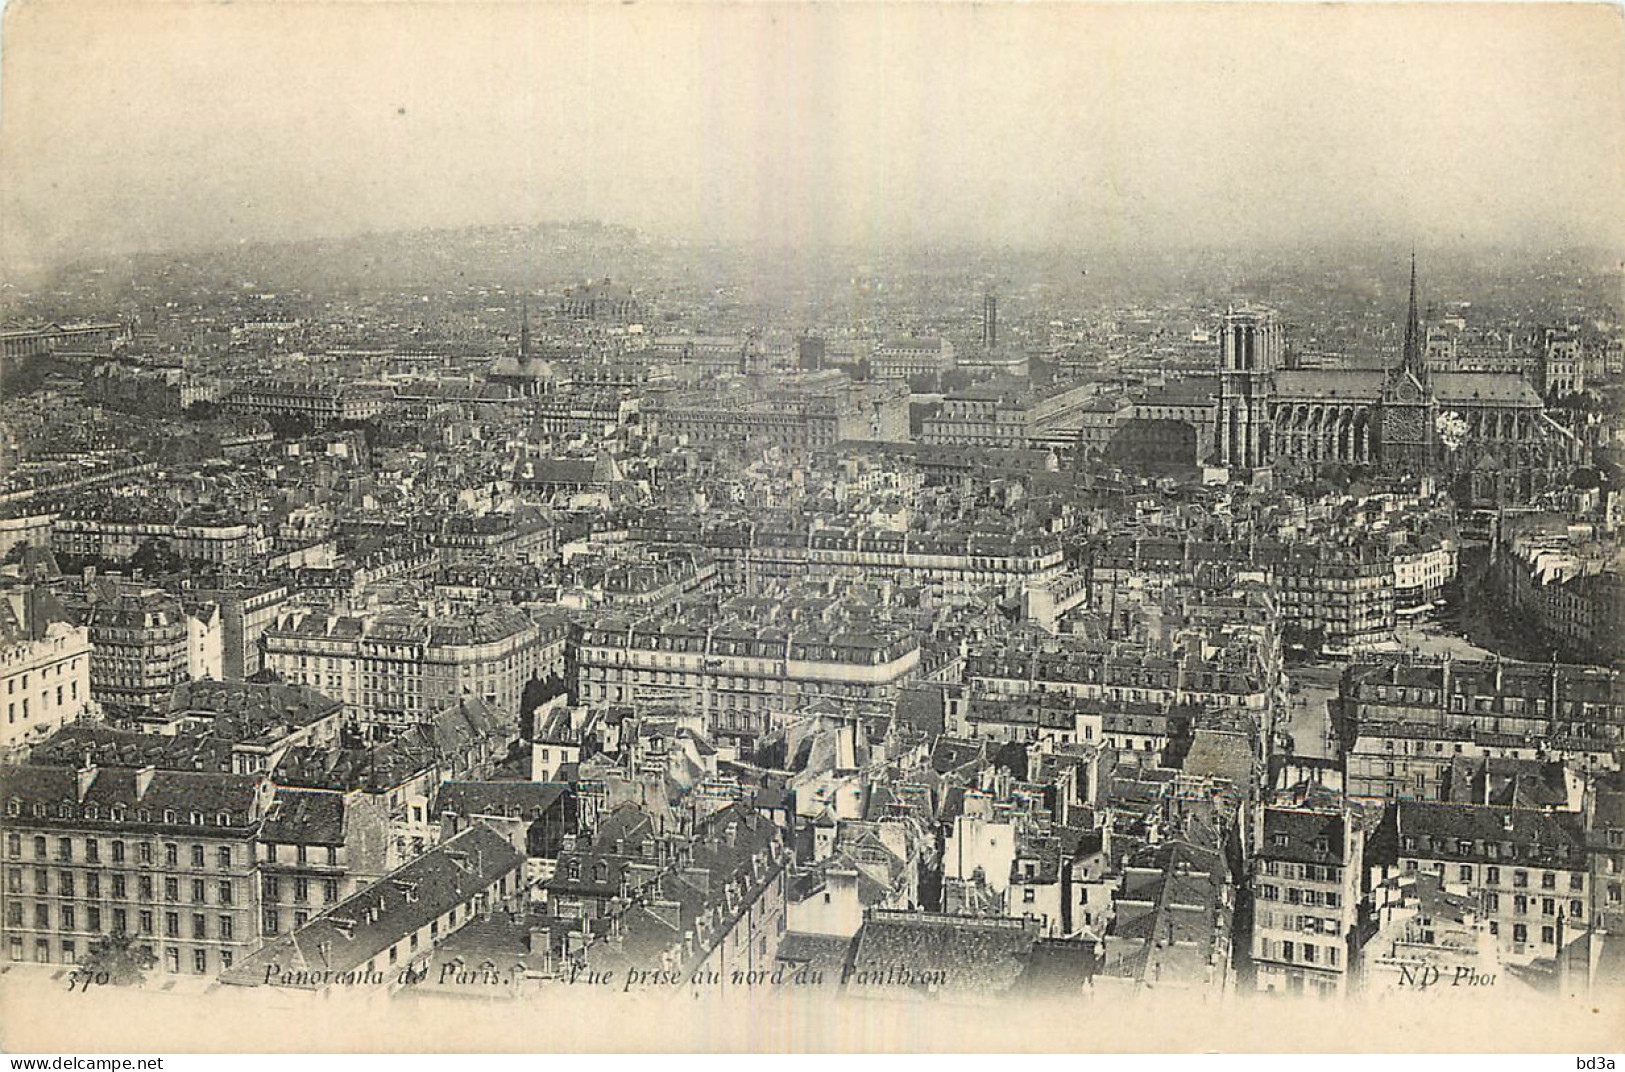 75 - PARIS - VUE PRISE AU NORD DU PANTHEON - Mehransichten, Panoramakarten